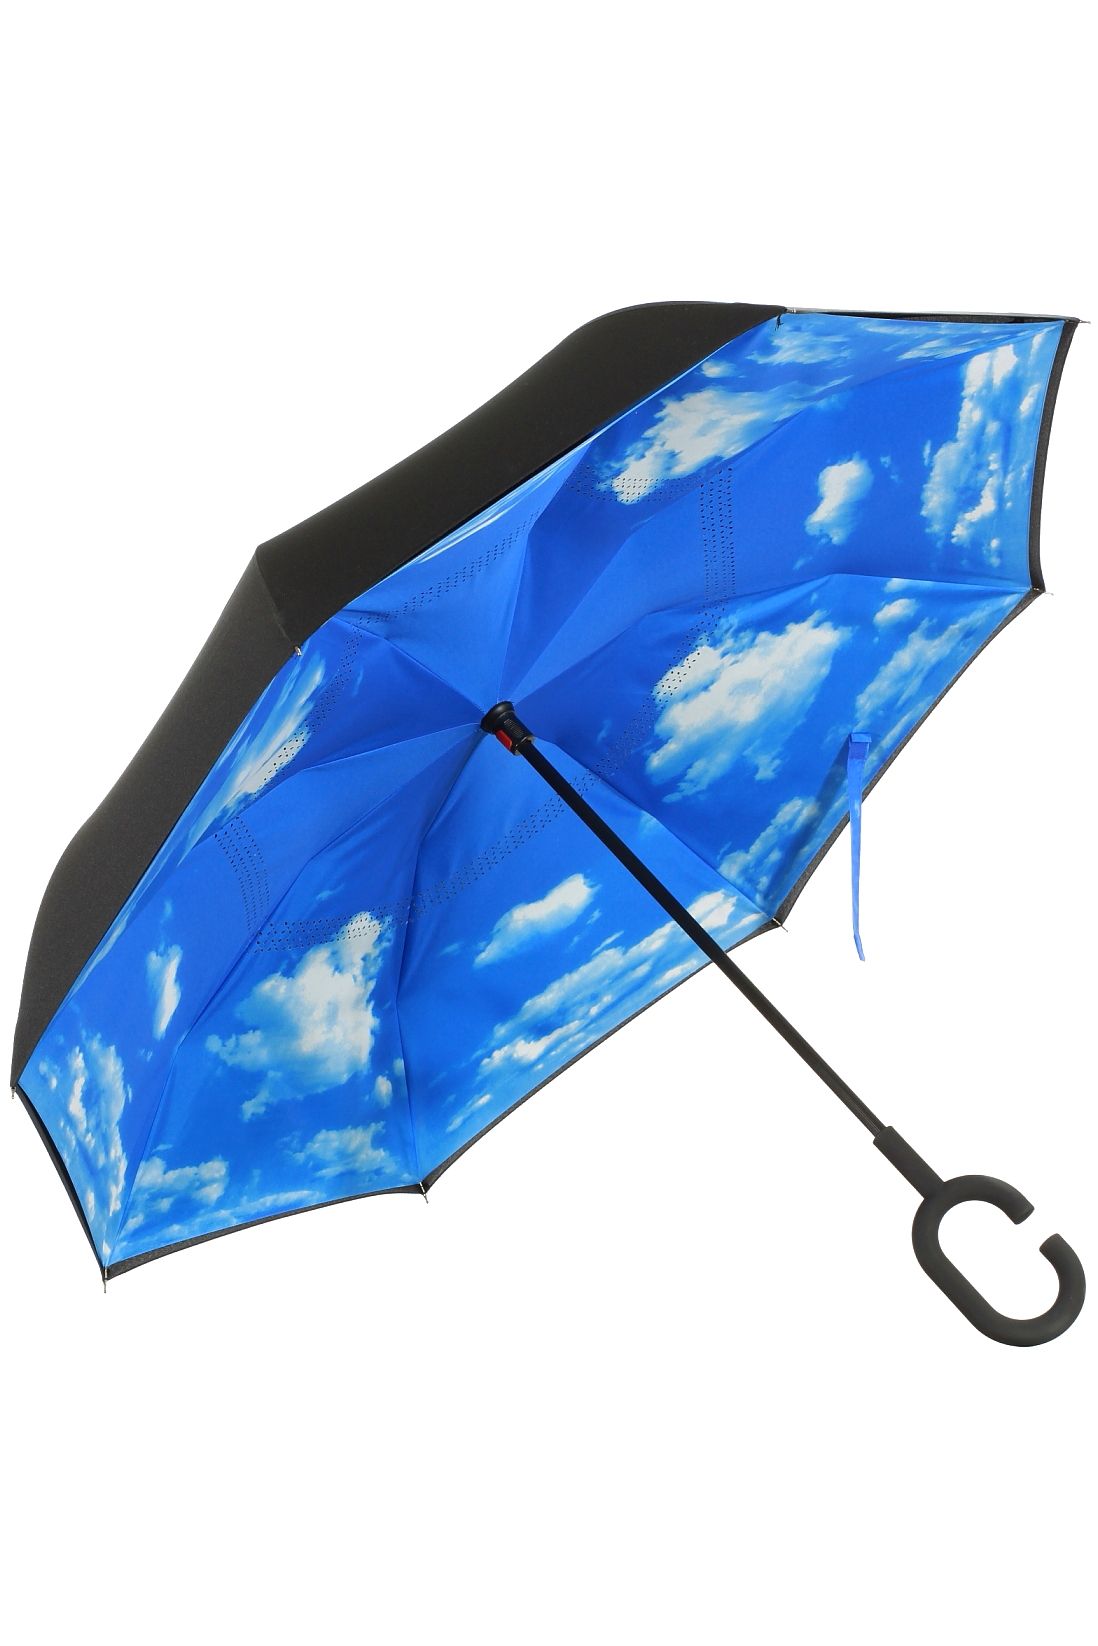 Зонтик брать. Mistral am-6008907 зонт. Зонт Romit автомат. Зонты трости Ферретти. Зонт Tamim-6a.